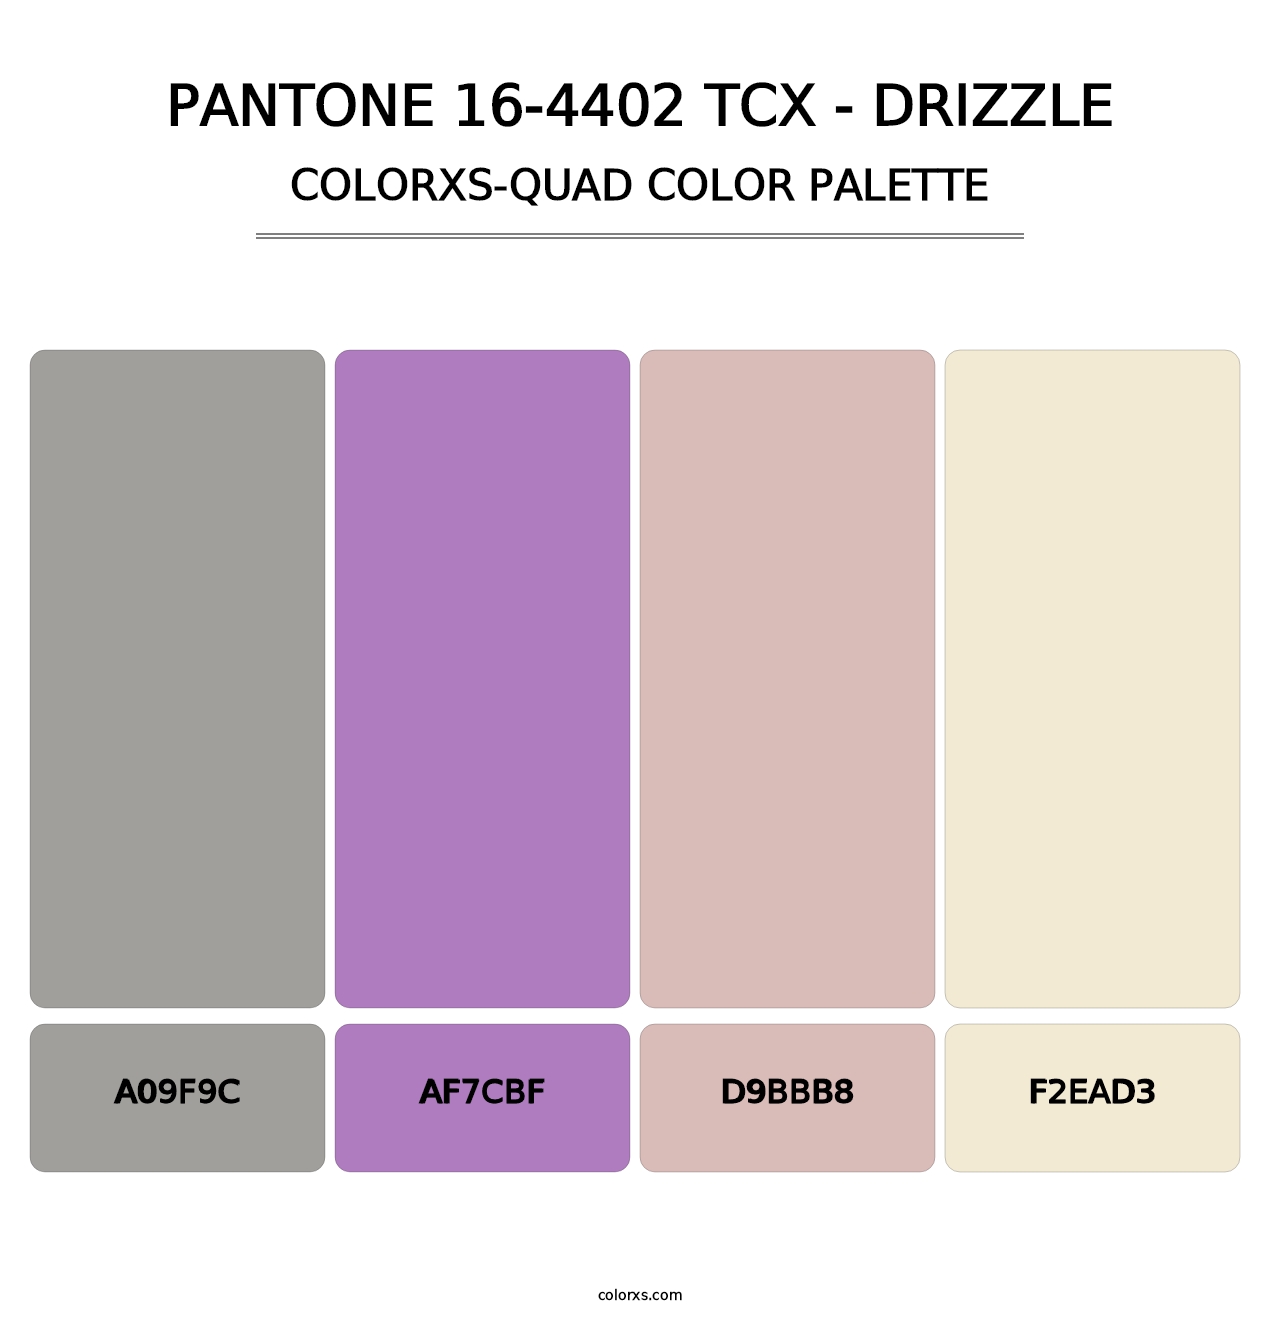 PANTONE 16-4402 TCX - Drizzle - Colorxs Quad Palette